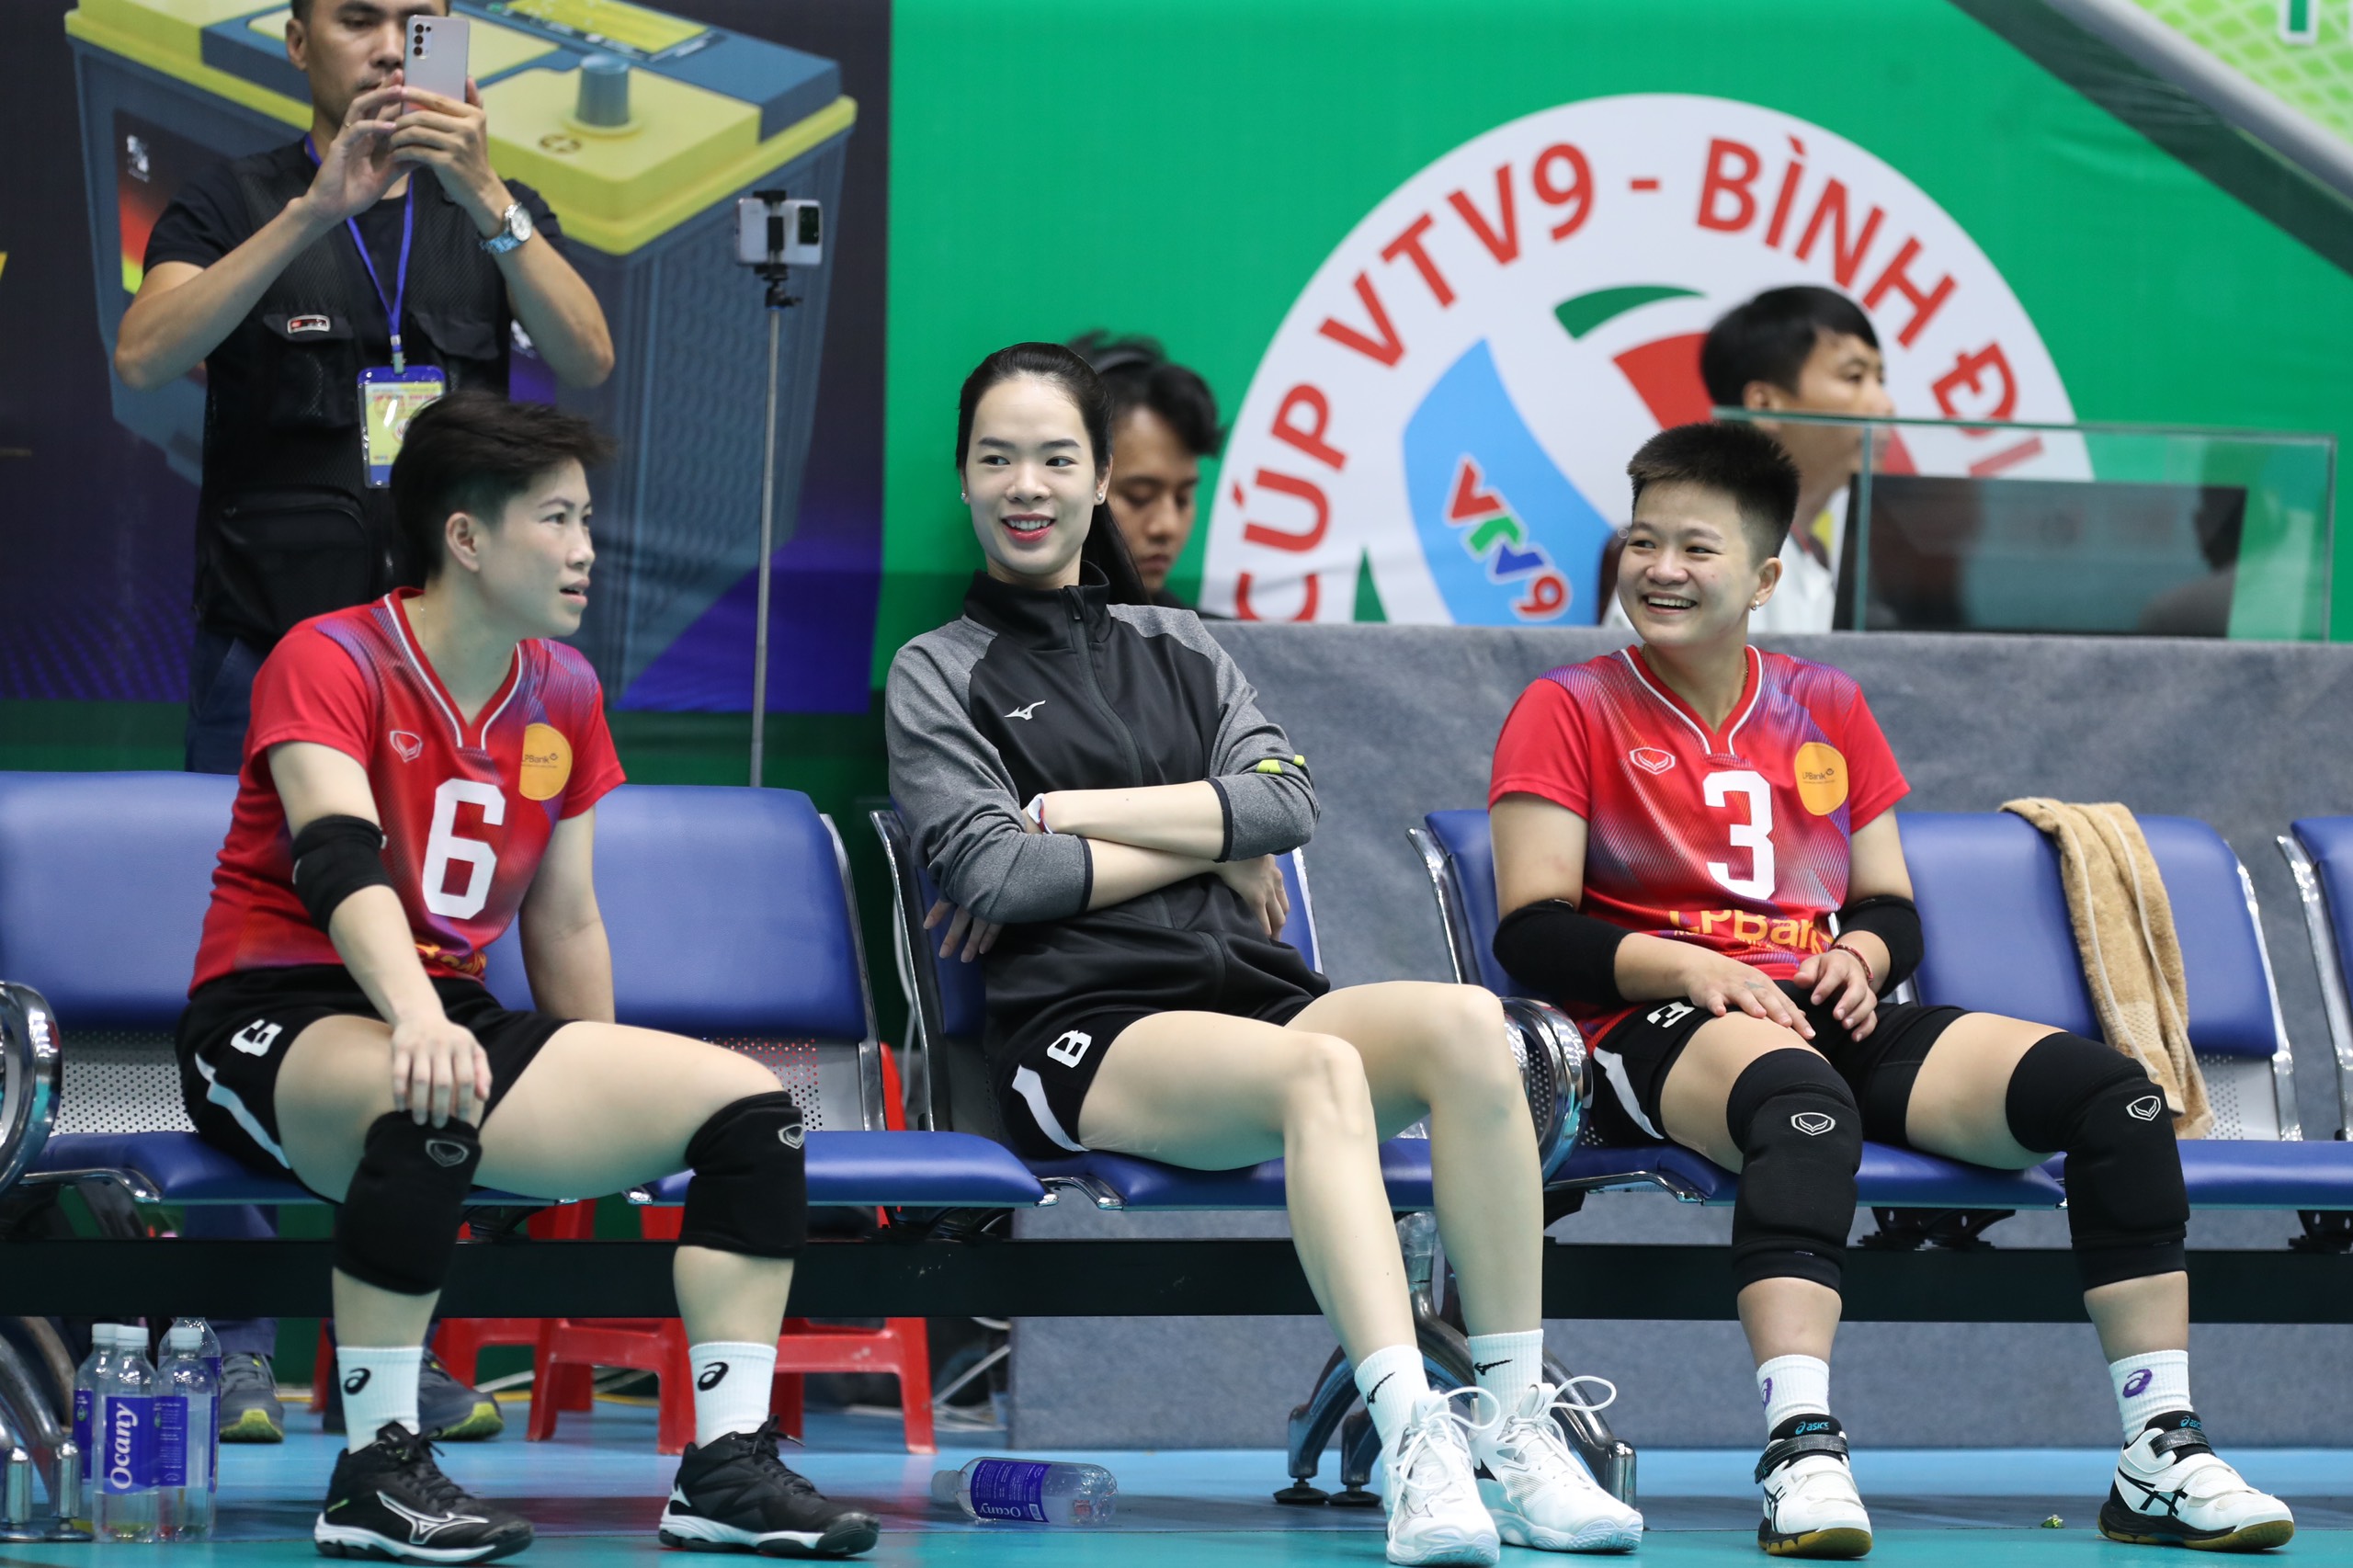 Dàn chân dài tài sắc vẹn toàn ở giải bóng chuyền nữ quốc tế VTV9-Bình Điền 2024- Ảnh 5.